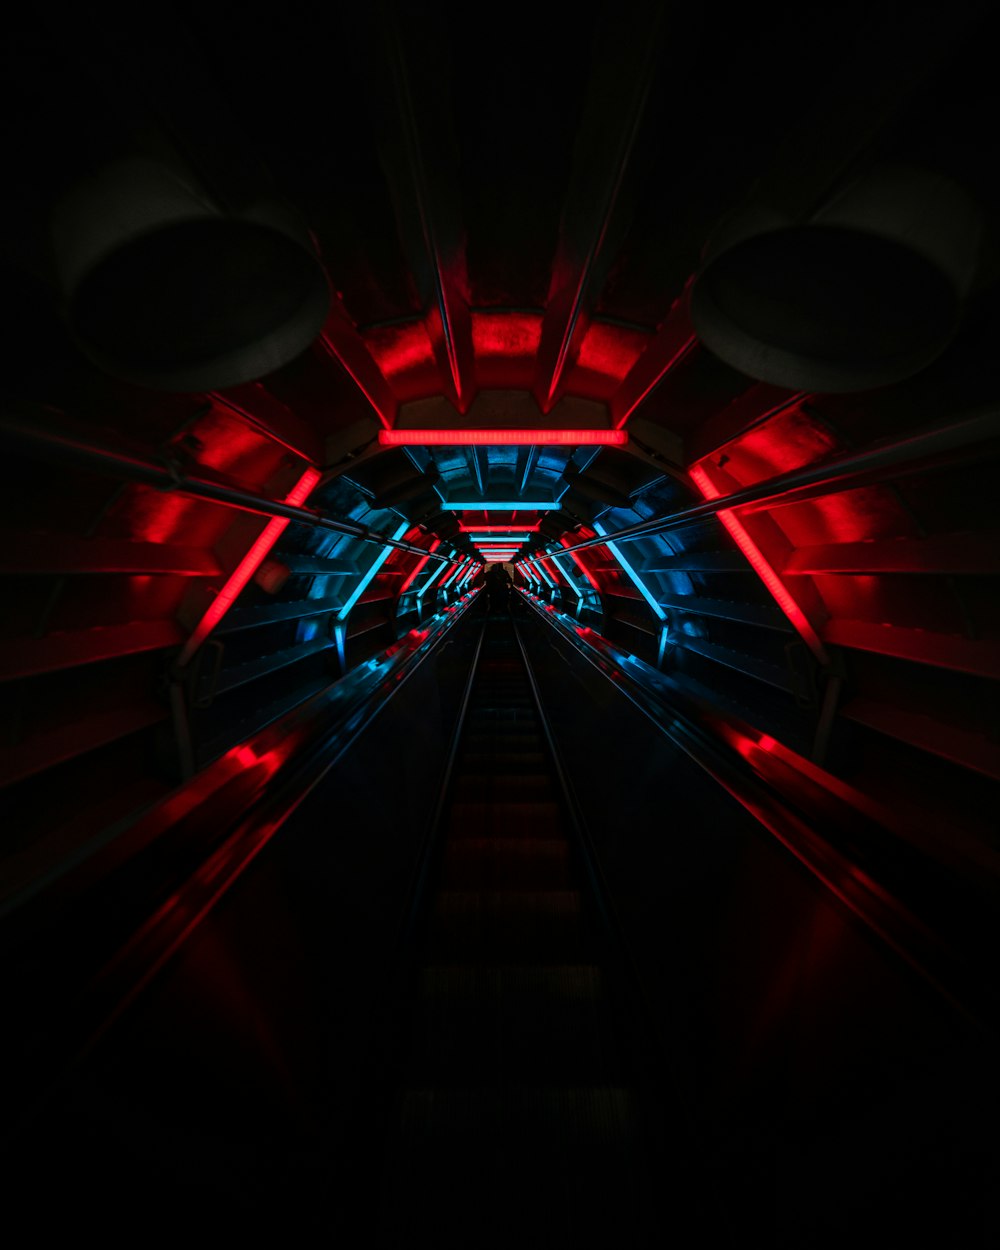 túnel rojo y negro con luz